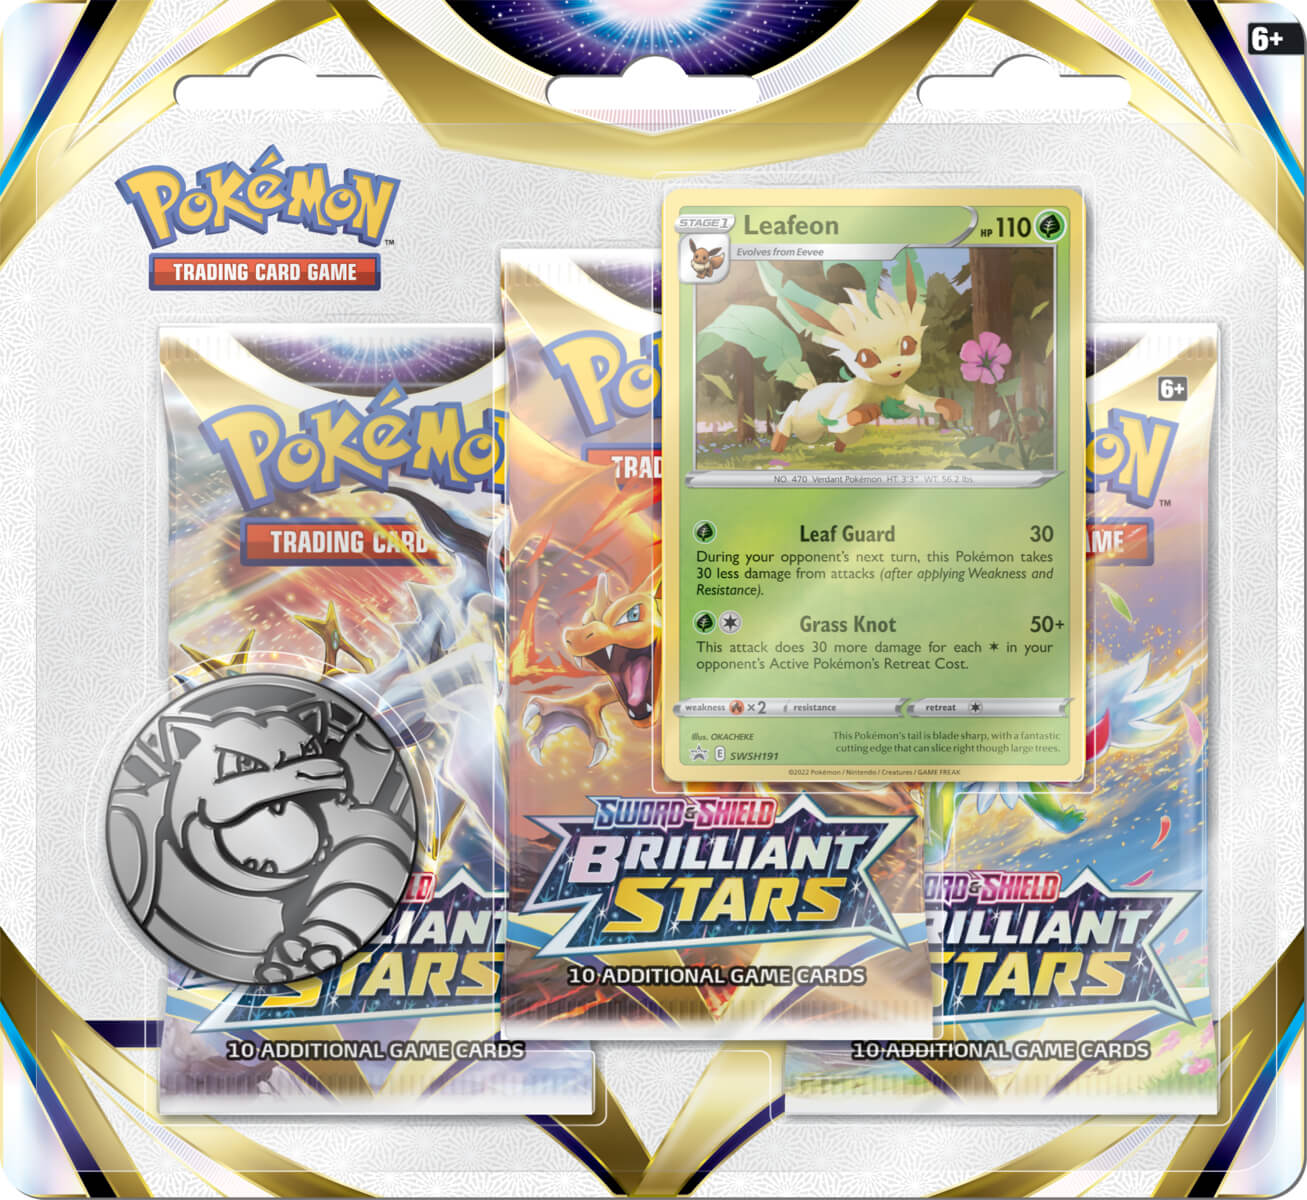 Pokemon Brilliant Stars 3 pack blister - Leafeon